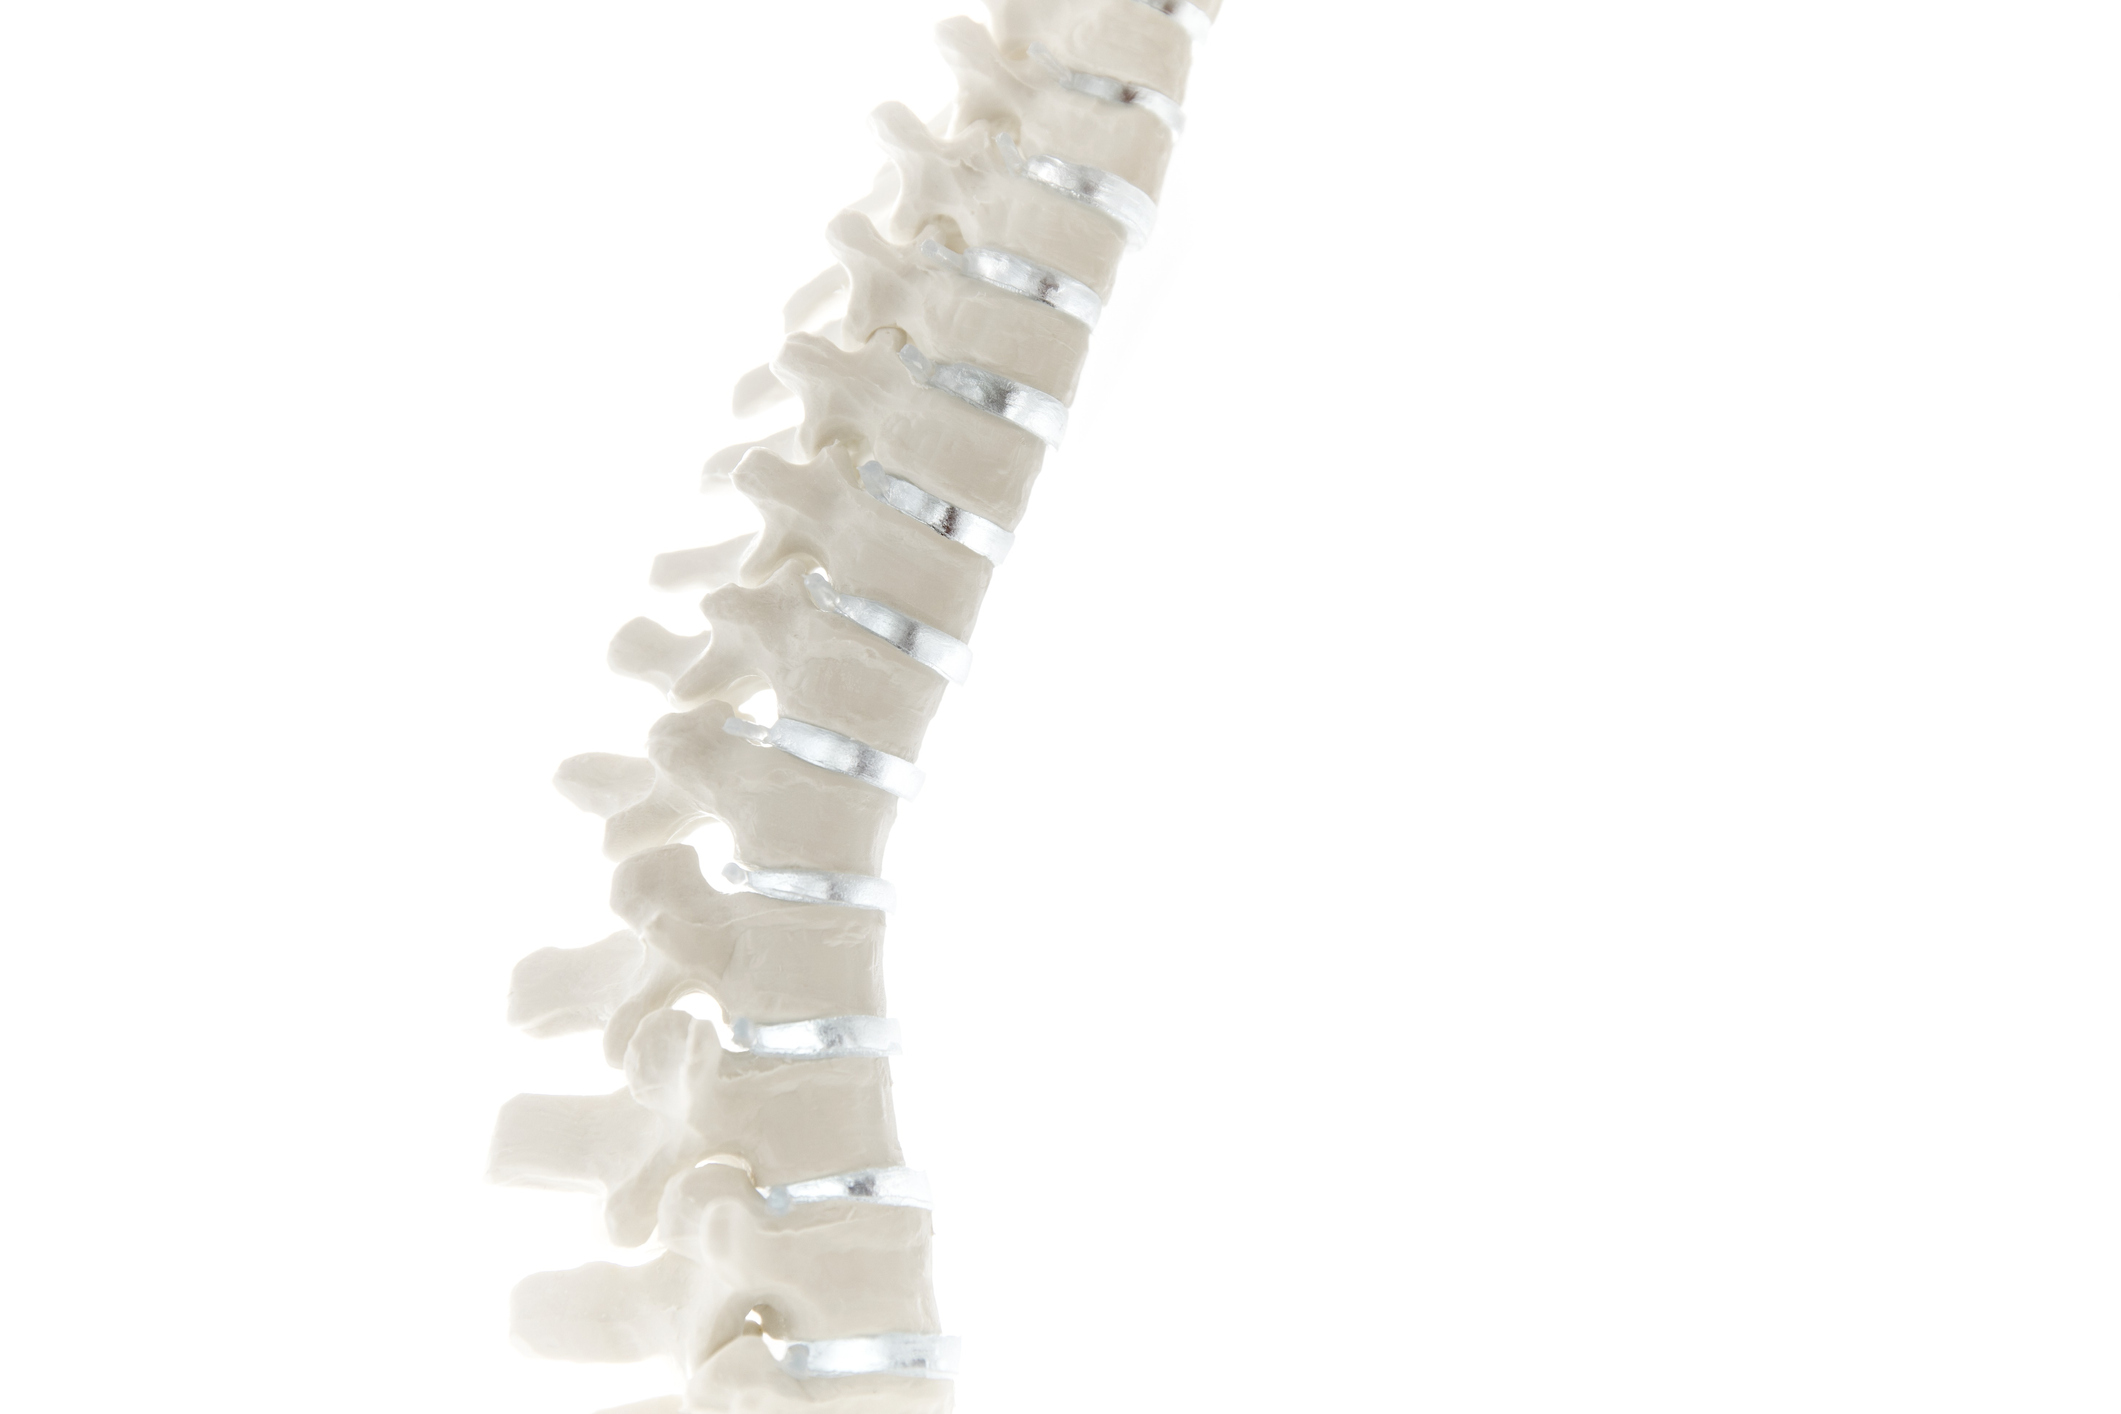 Anatomical spine model